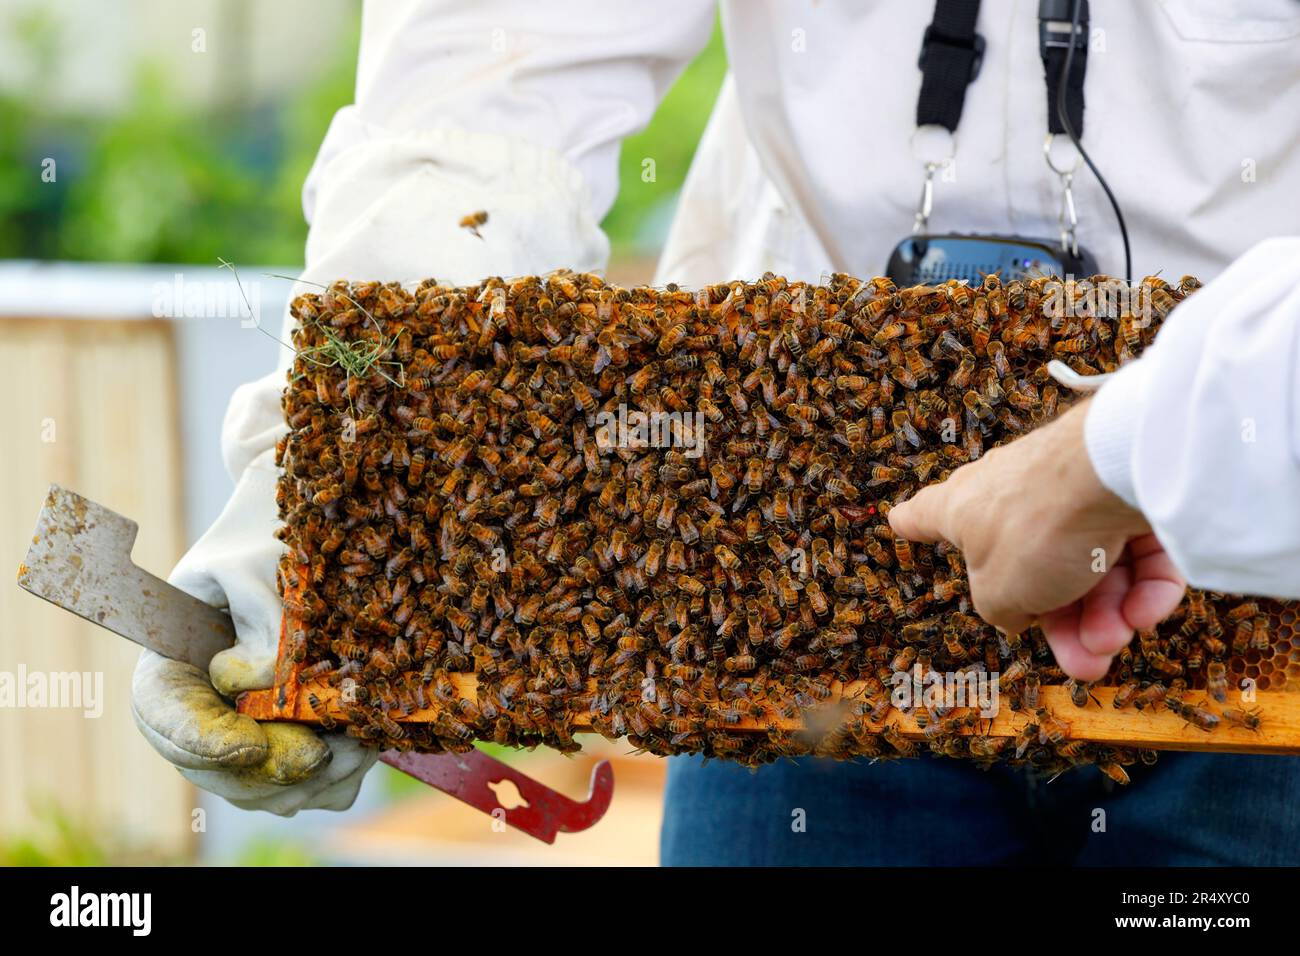 Ein Imker mit J-Haken-Werkzeug hält einen Brut-Kamm voller Honigbienen, während ein Finger auf den roten Punkt zeigt, der mit Queen Bee markiert ist. Stockfoto